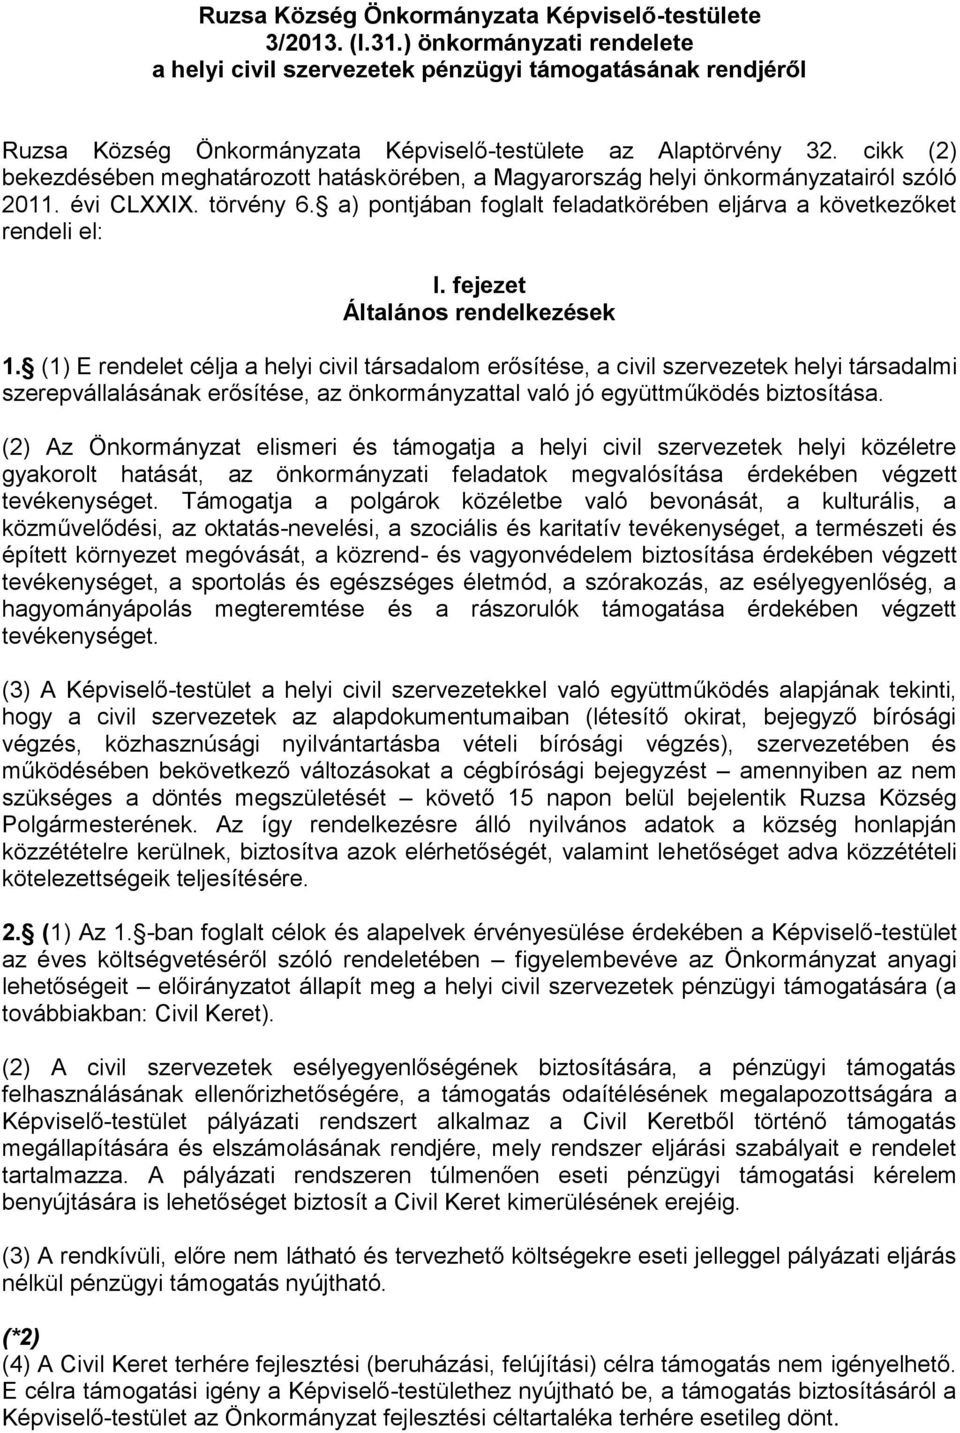 cikk (2) bekezdésében meghatározott hatáskörében, a Magyarország helyi önkormányzatairól szóló 2011. évi CLXXIX. törvény 6. a) pontjában foglalt feladatkörében eljárva a következőket rendeli el: I.